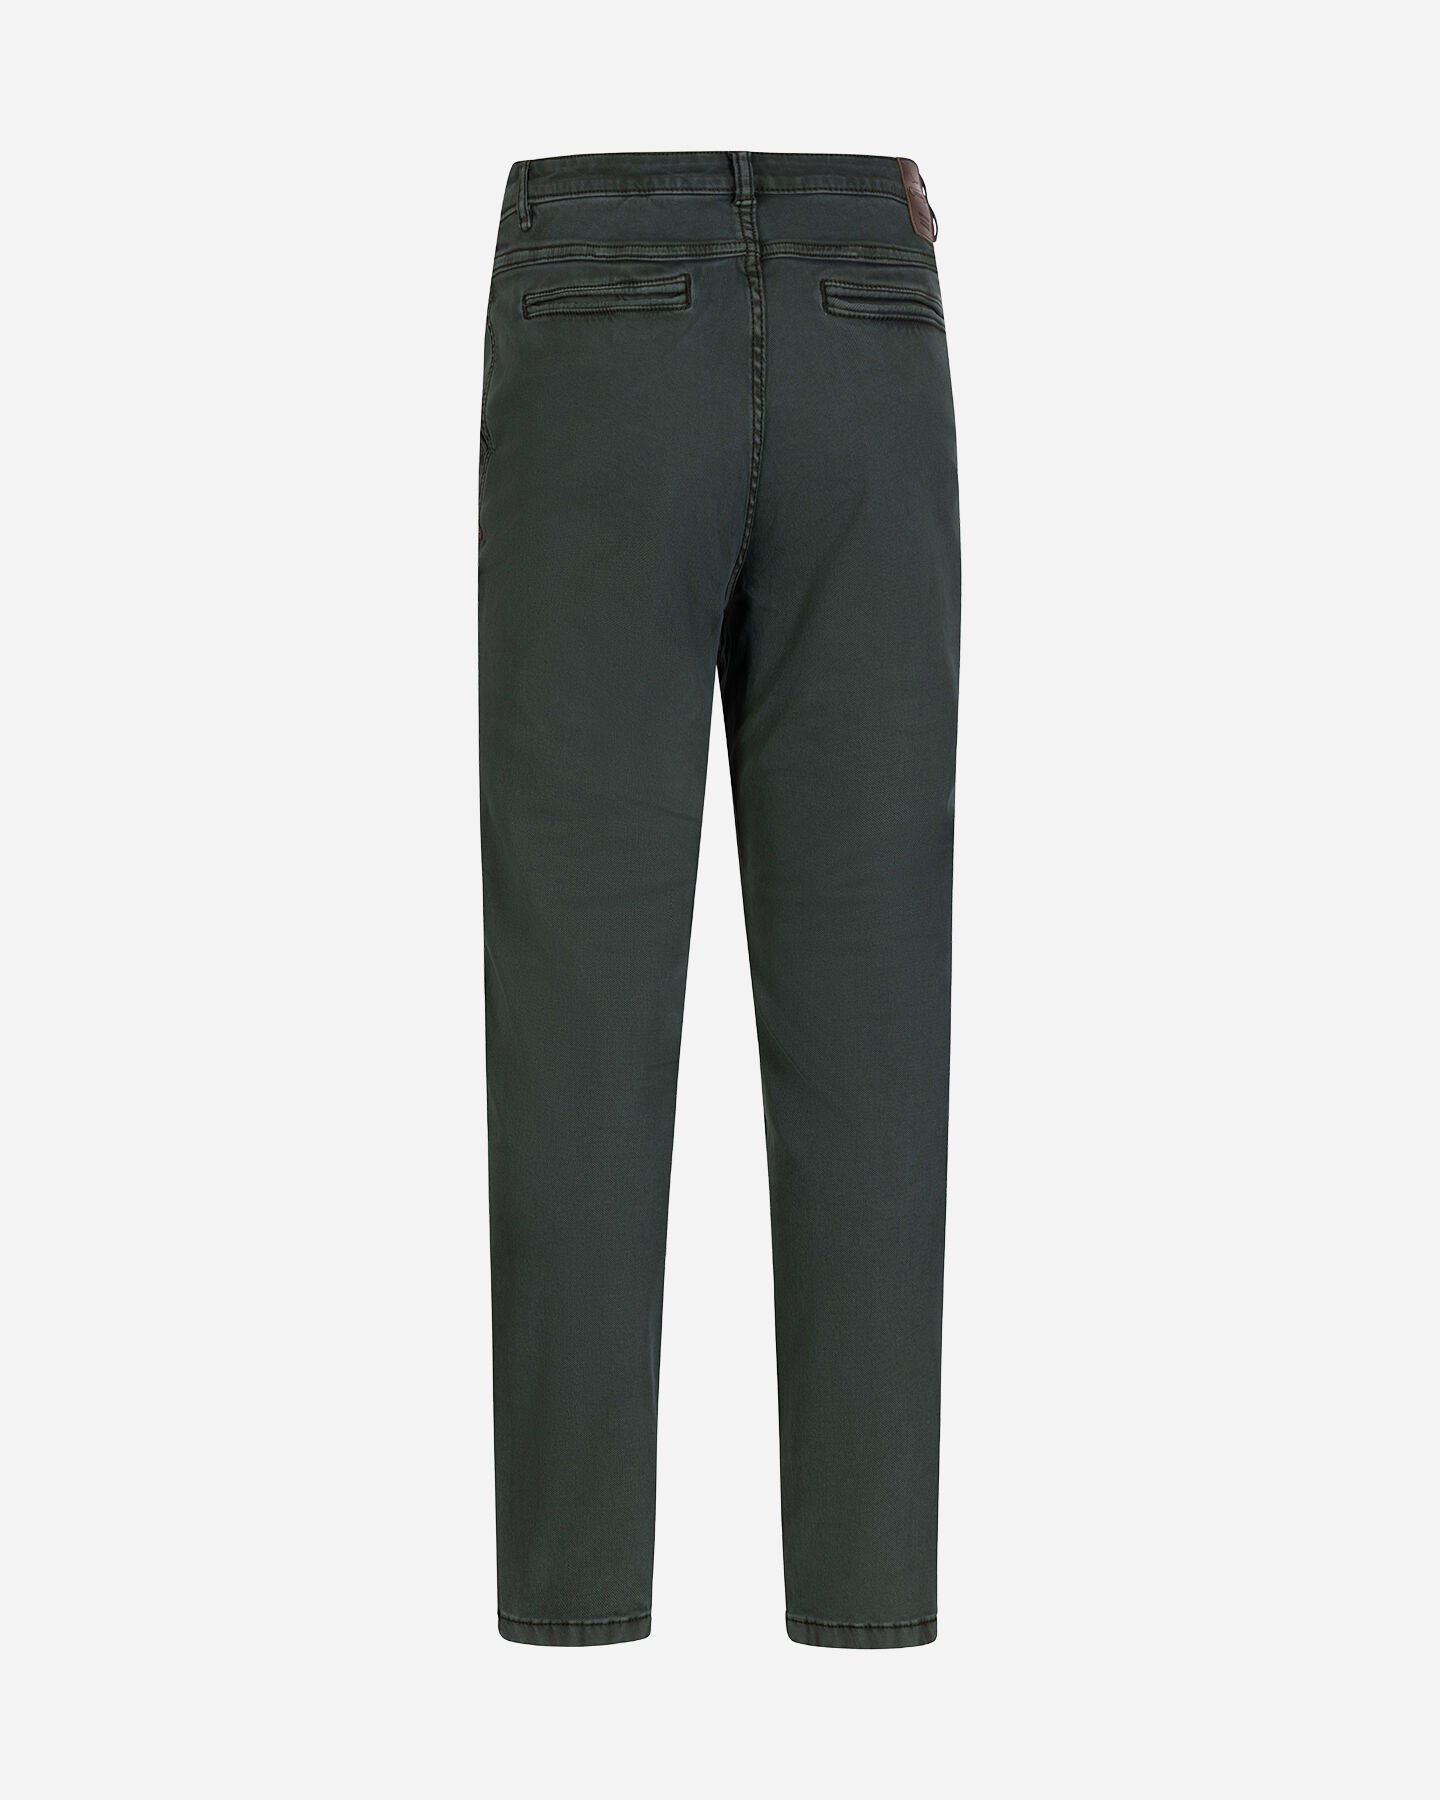  Pantalone COTTON BELT CHINO HYBRID M S4127003|043A|32 scatto 5